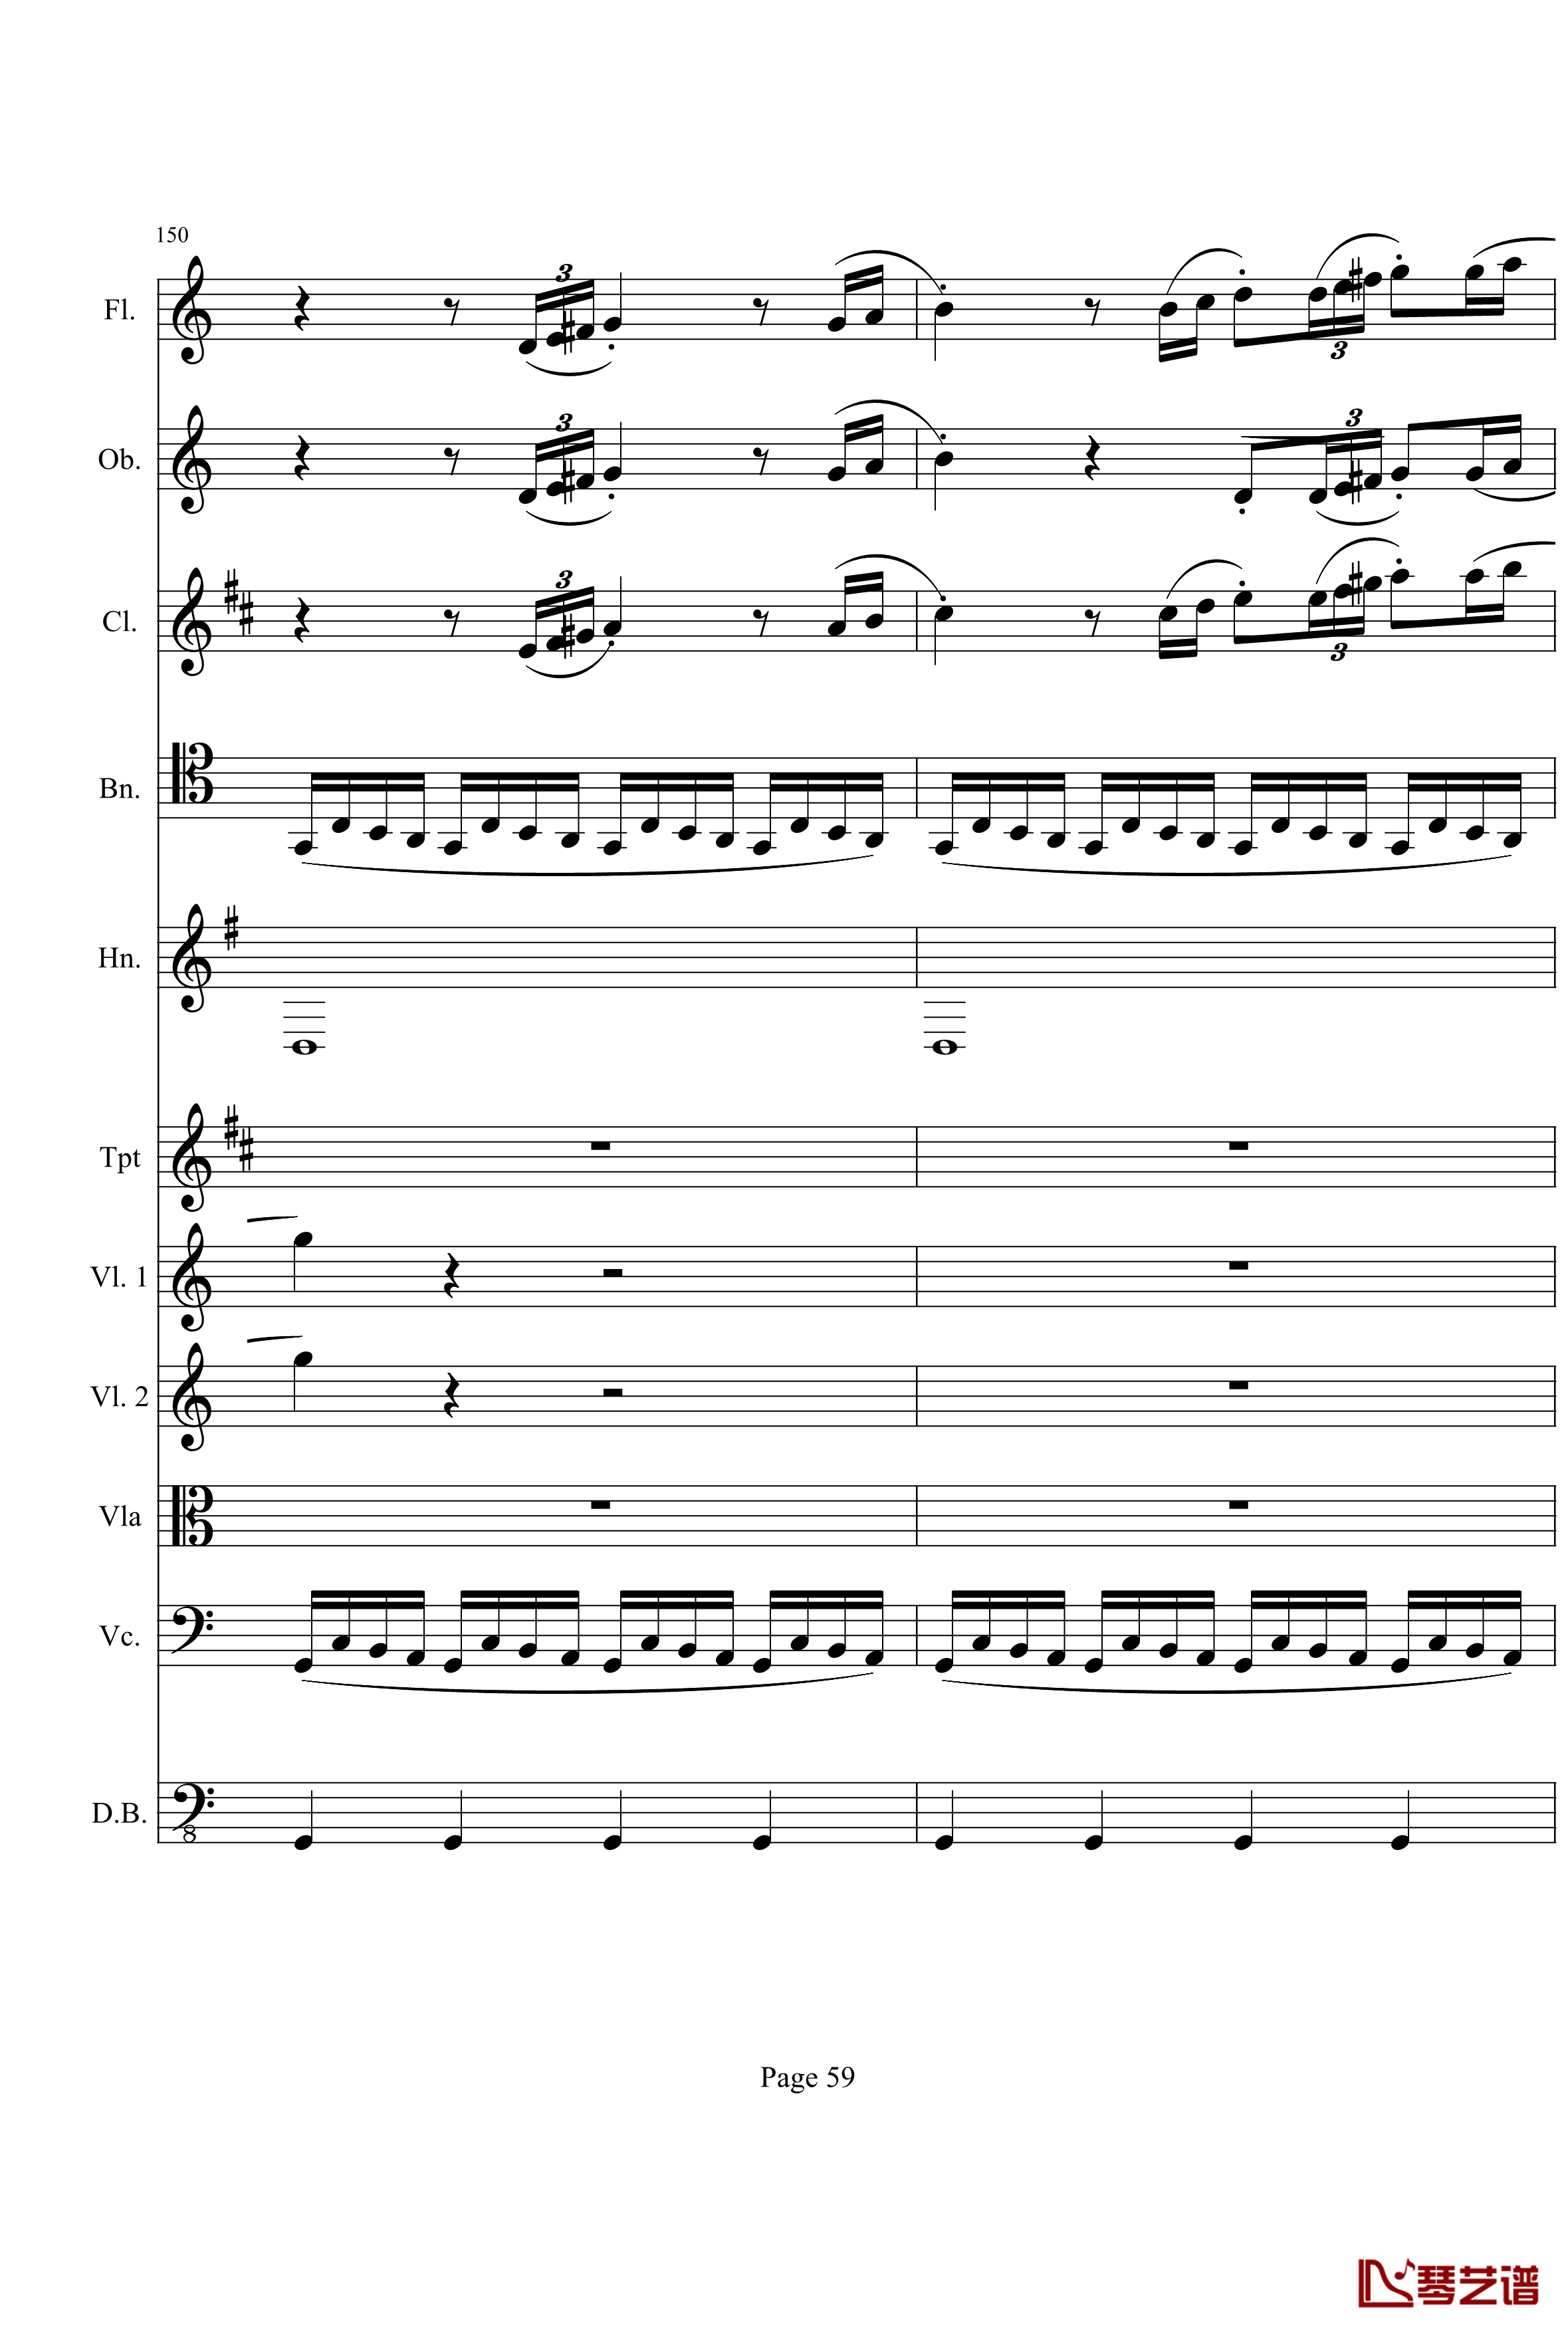 奏鸣曲之交响钢琴谱-第21-Ⅰ-贝多芬-beethoven59